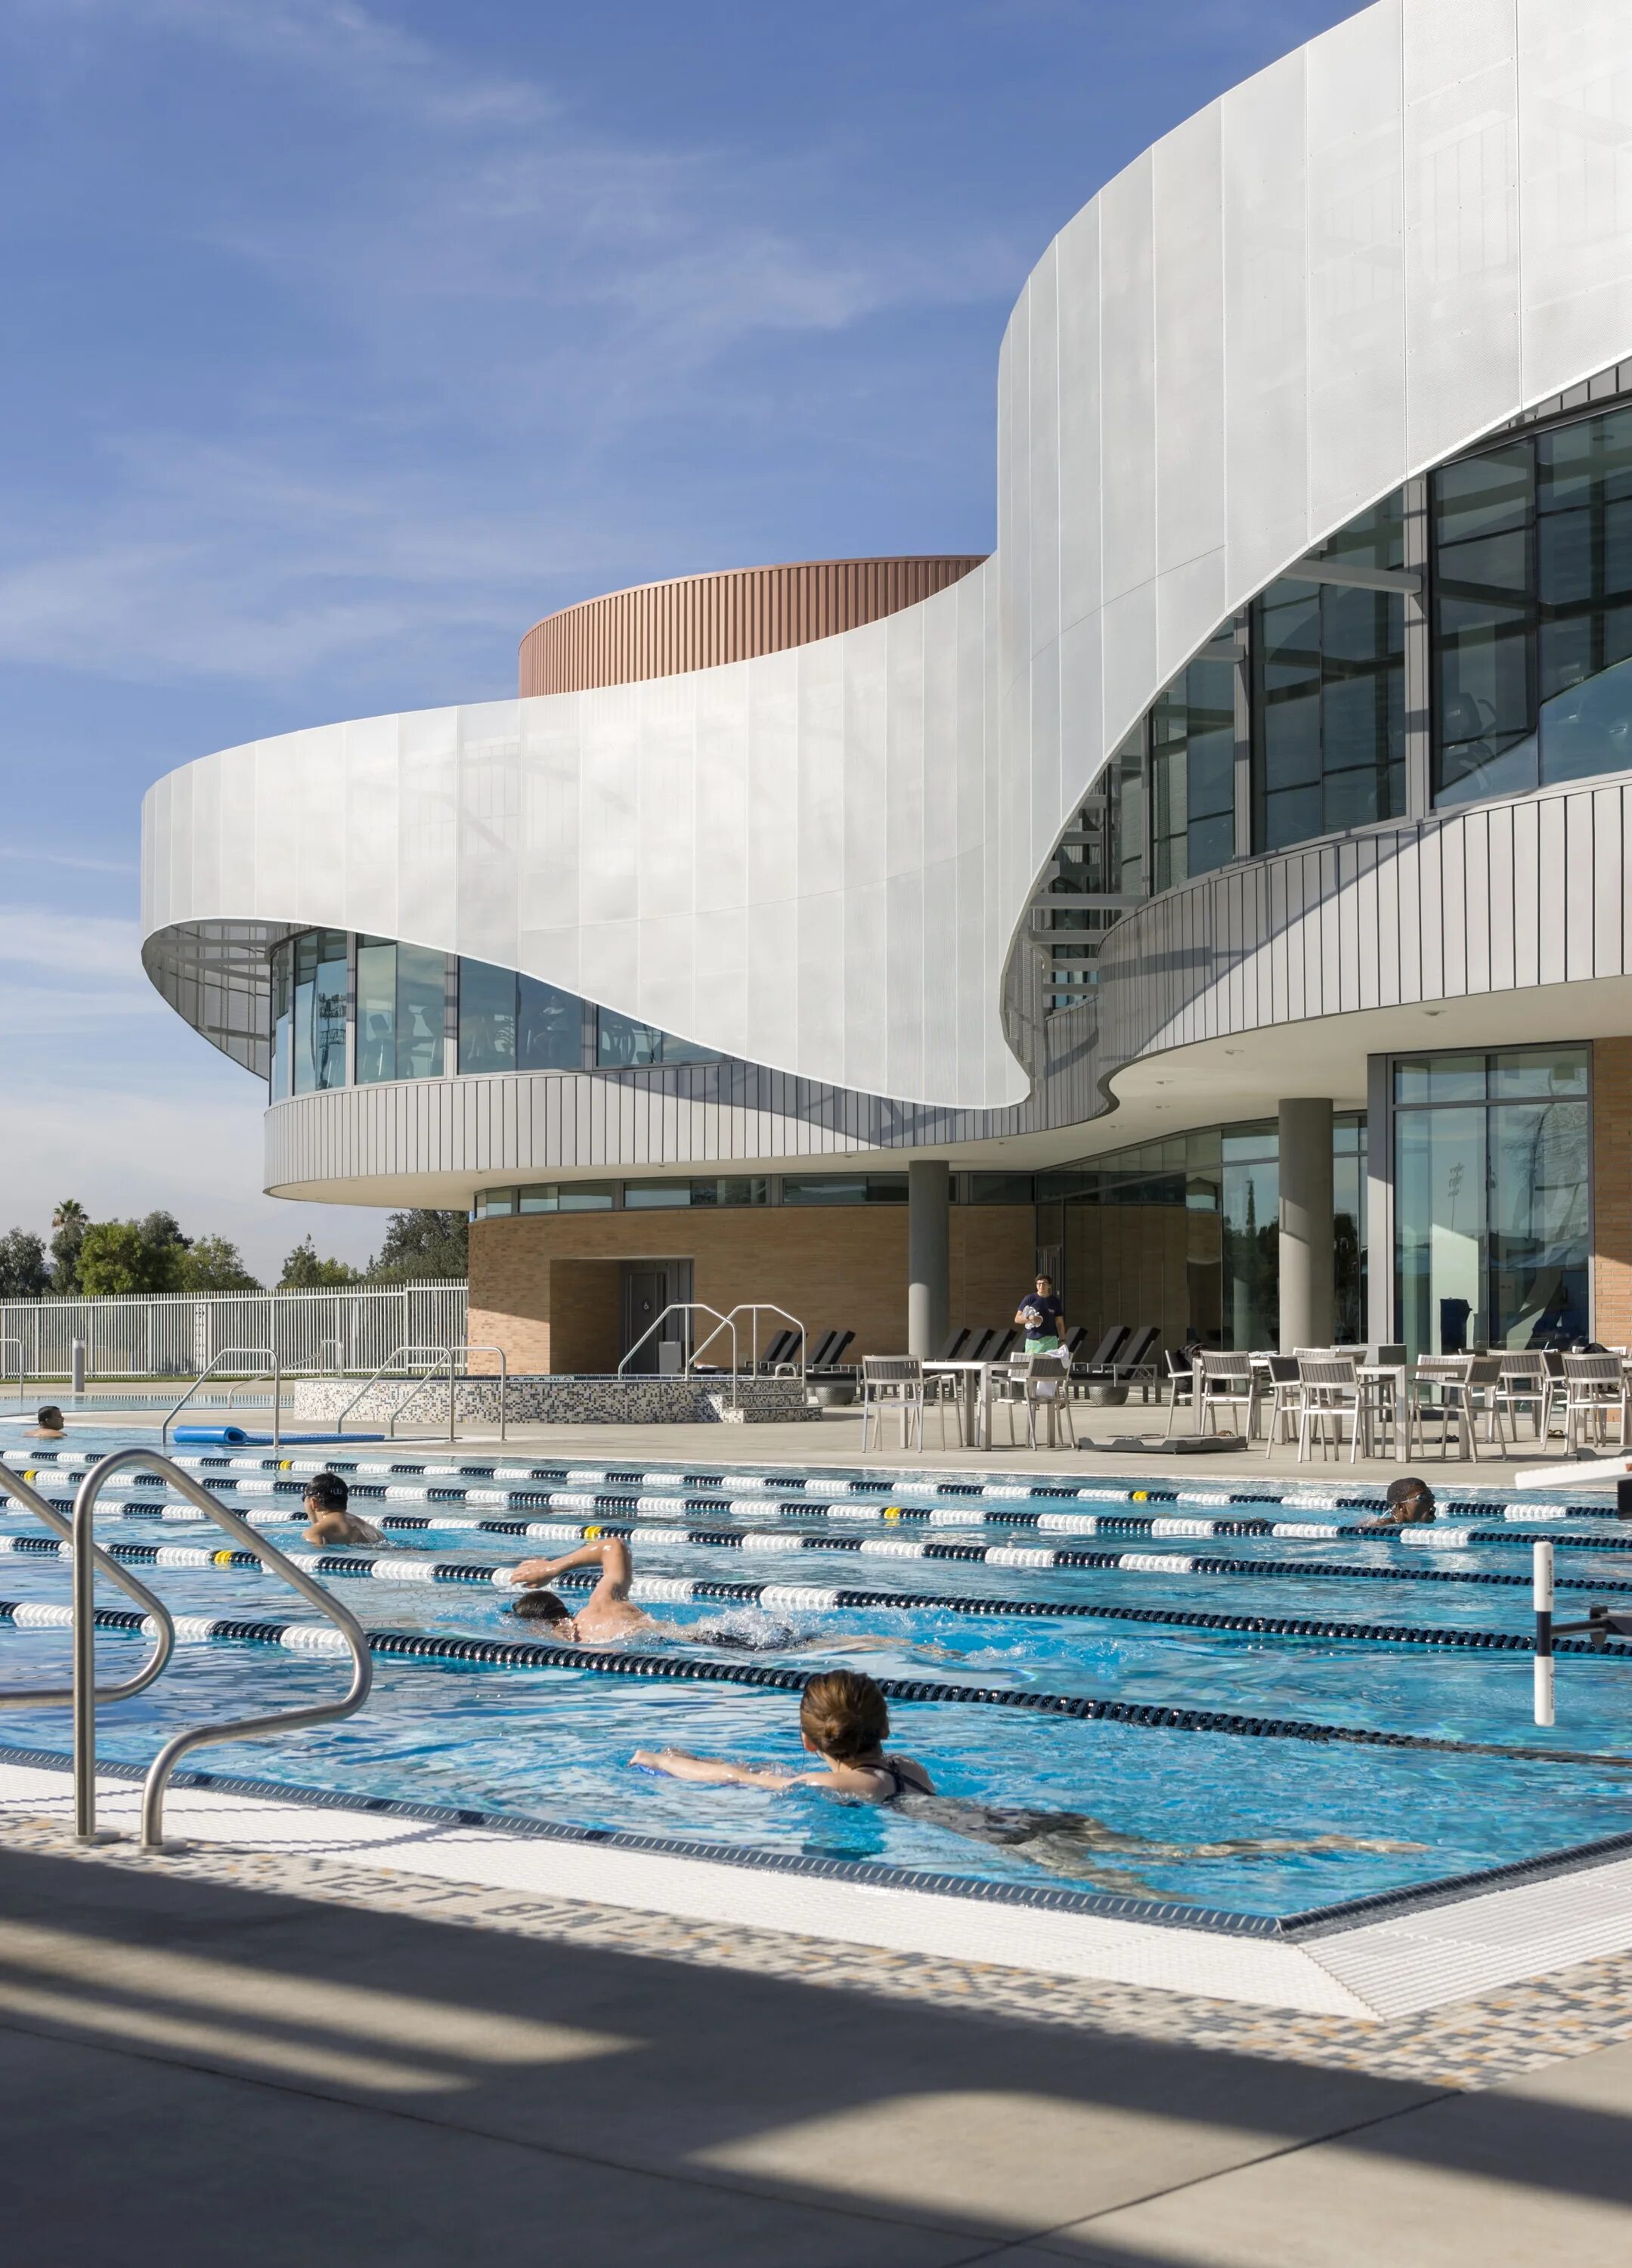 Спорткомплекс в Риверсайде, Калифорния. Бассейн архитектура спорткомплекс. Спортивный центр с бассейном в Германии архитектура. Современное здание с бассейном.